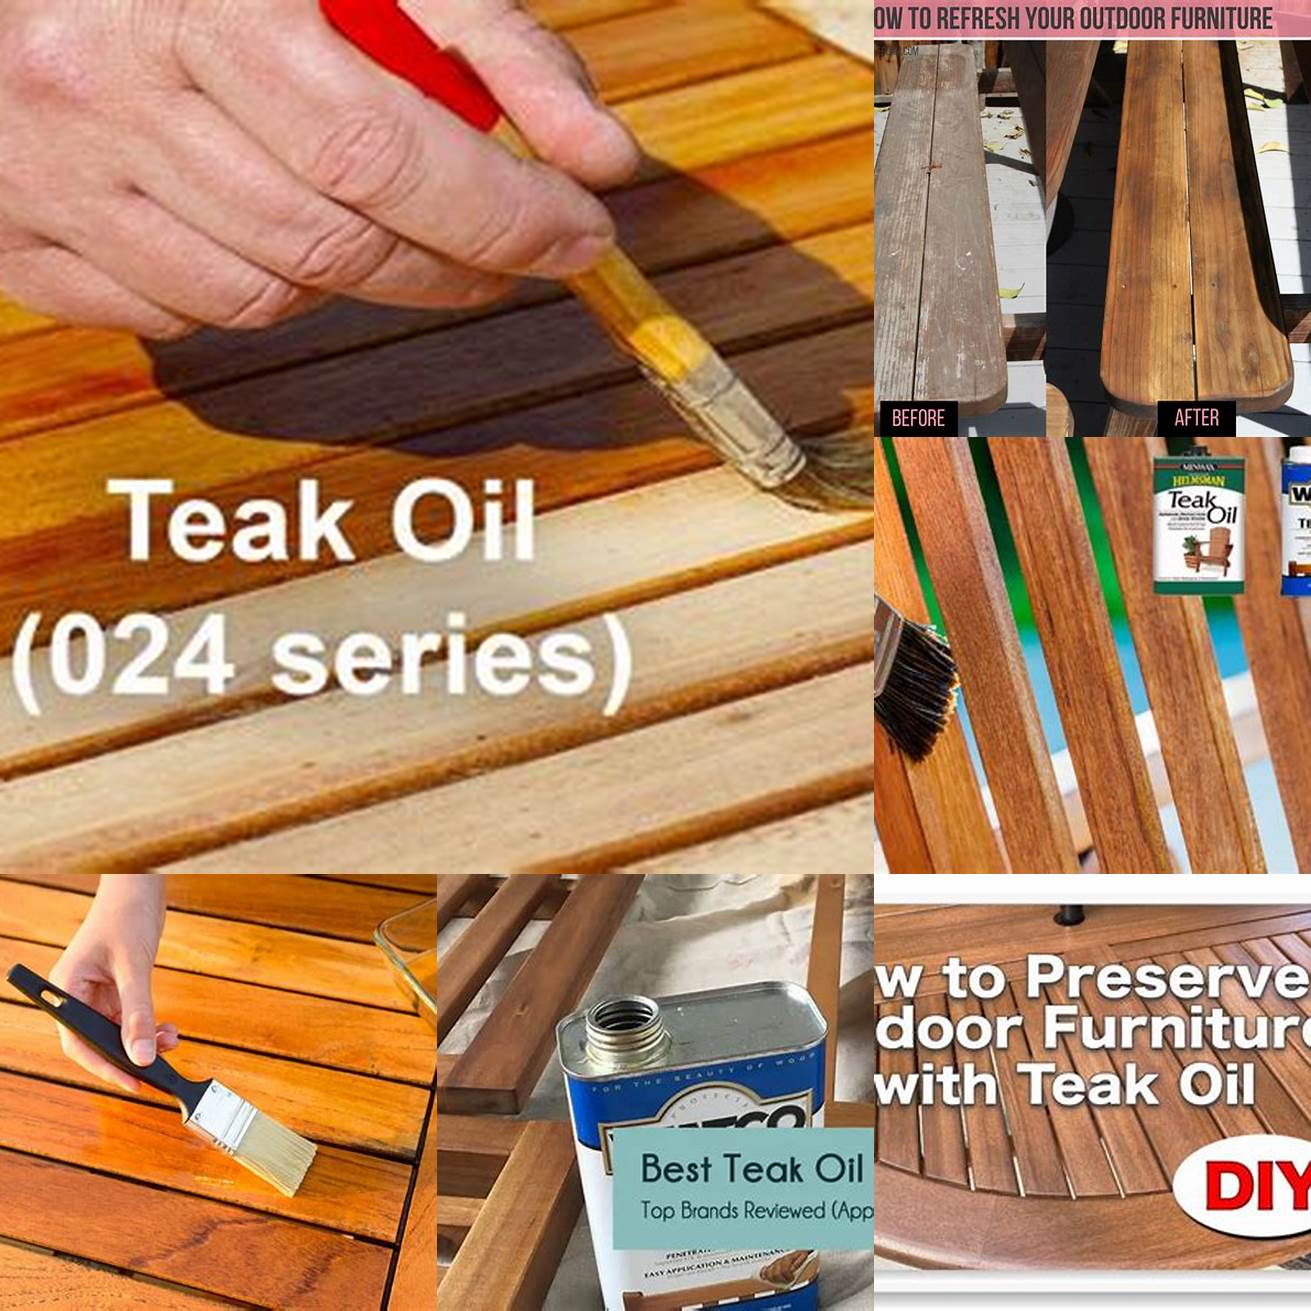 Tips for applying teak oil